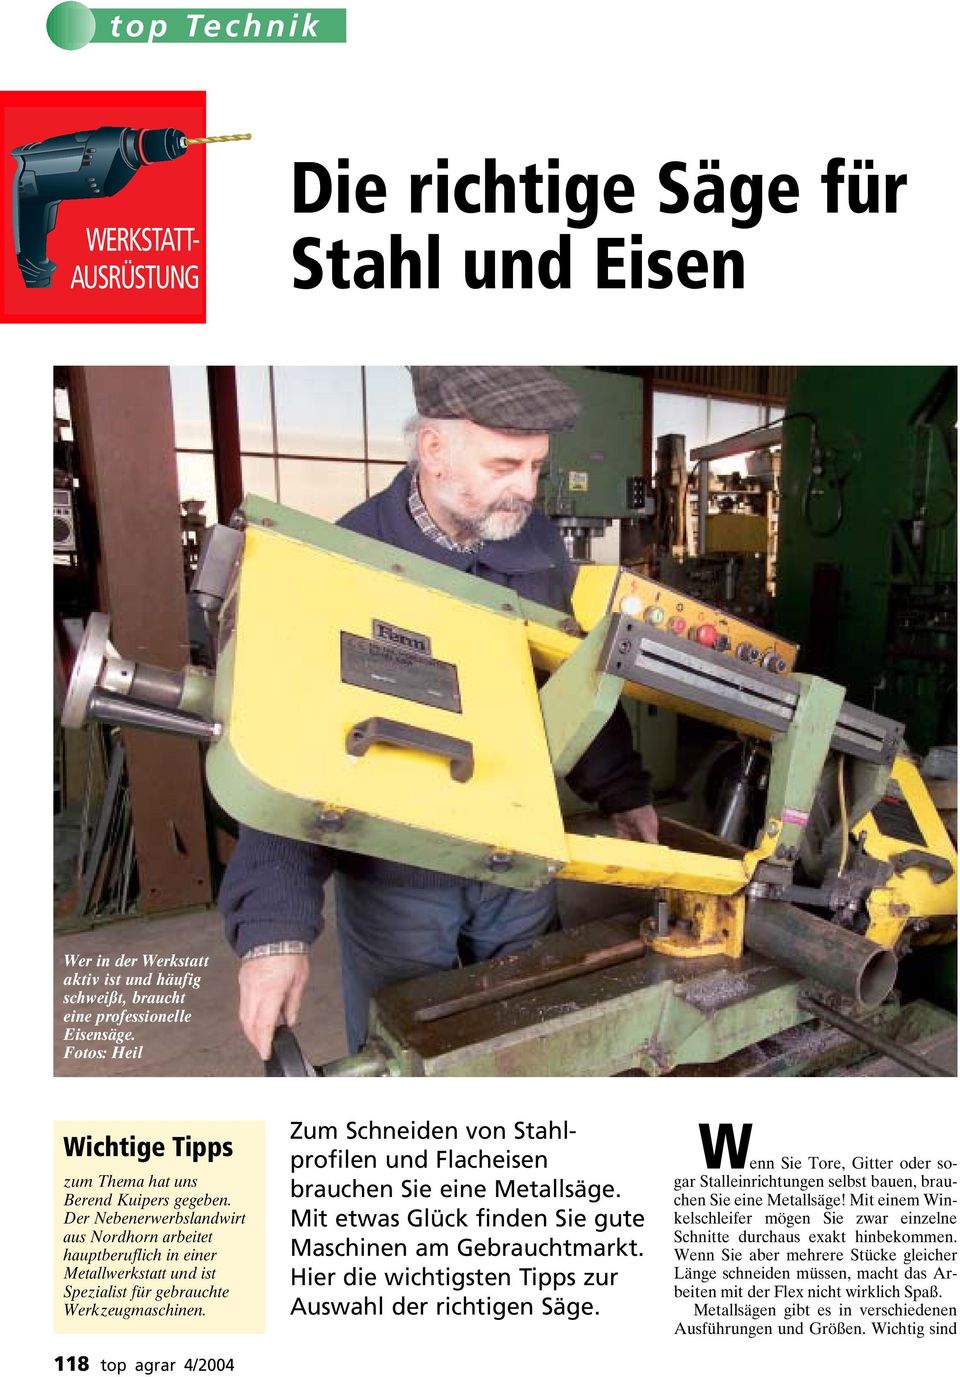 Der Nebenerwerbslandwirt aus Nordhorn arbeitet hauptberuflich in einer Metallwerkstatt und ist Spezialist für gebrauchte Werkzeugmaschinen.